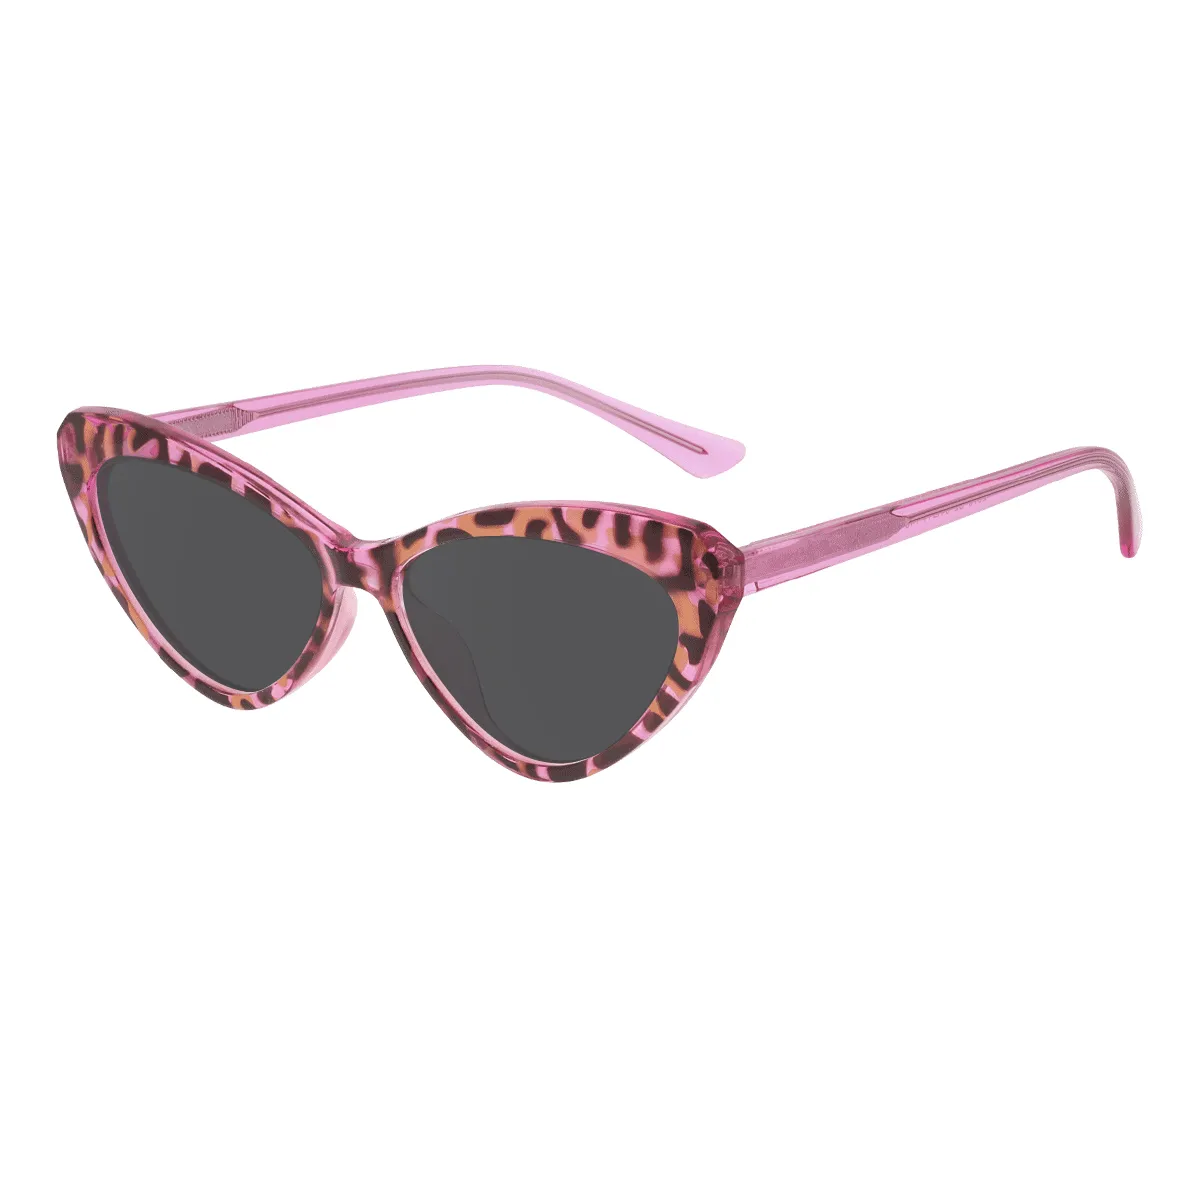 Helga - Cat-eye Demi Sunglasses for Women